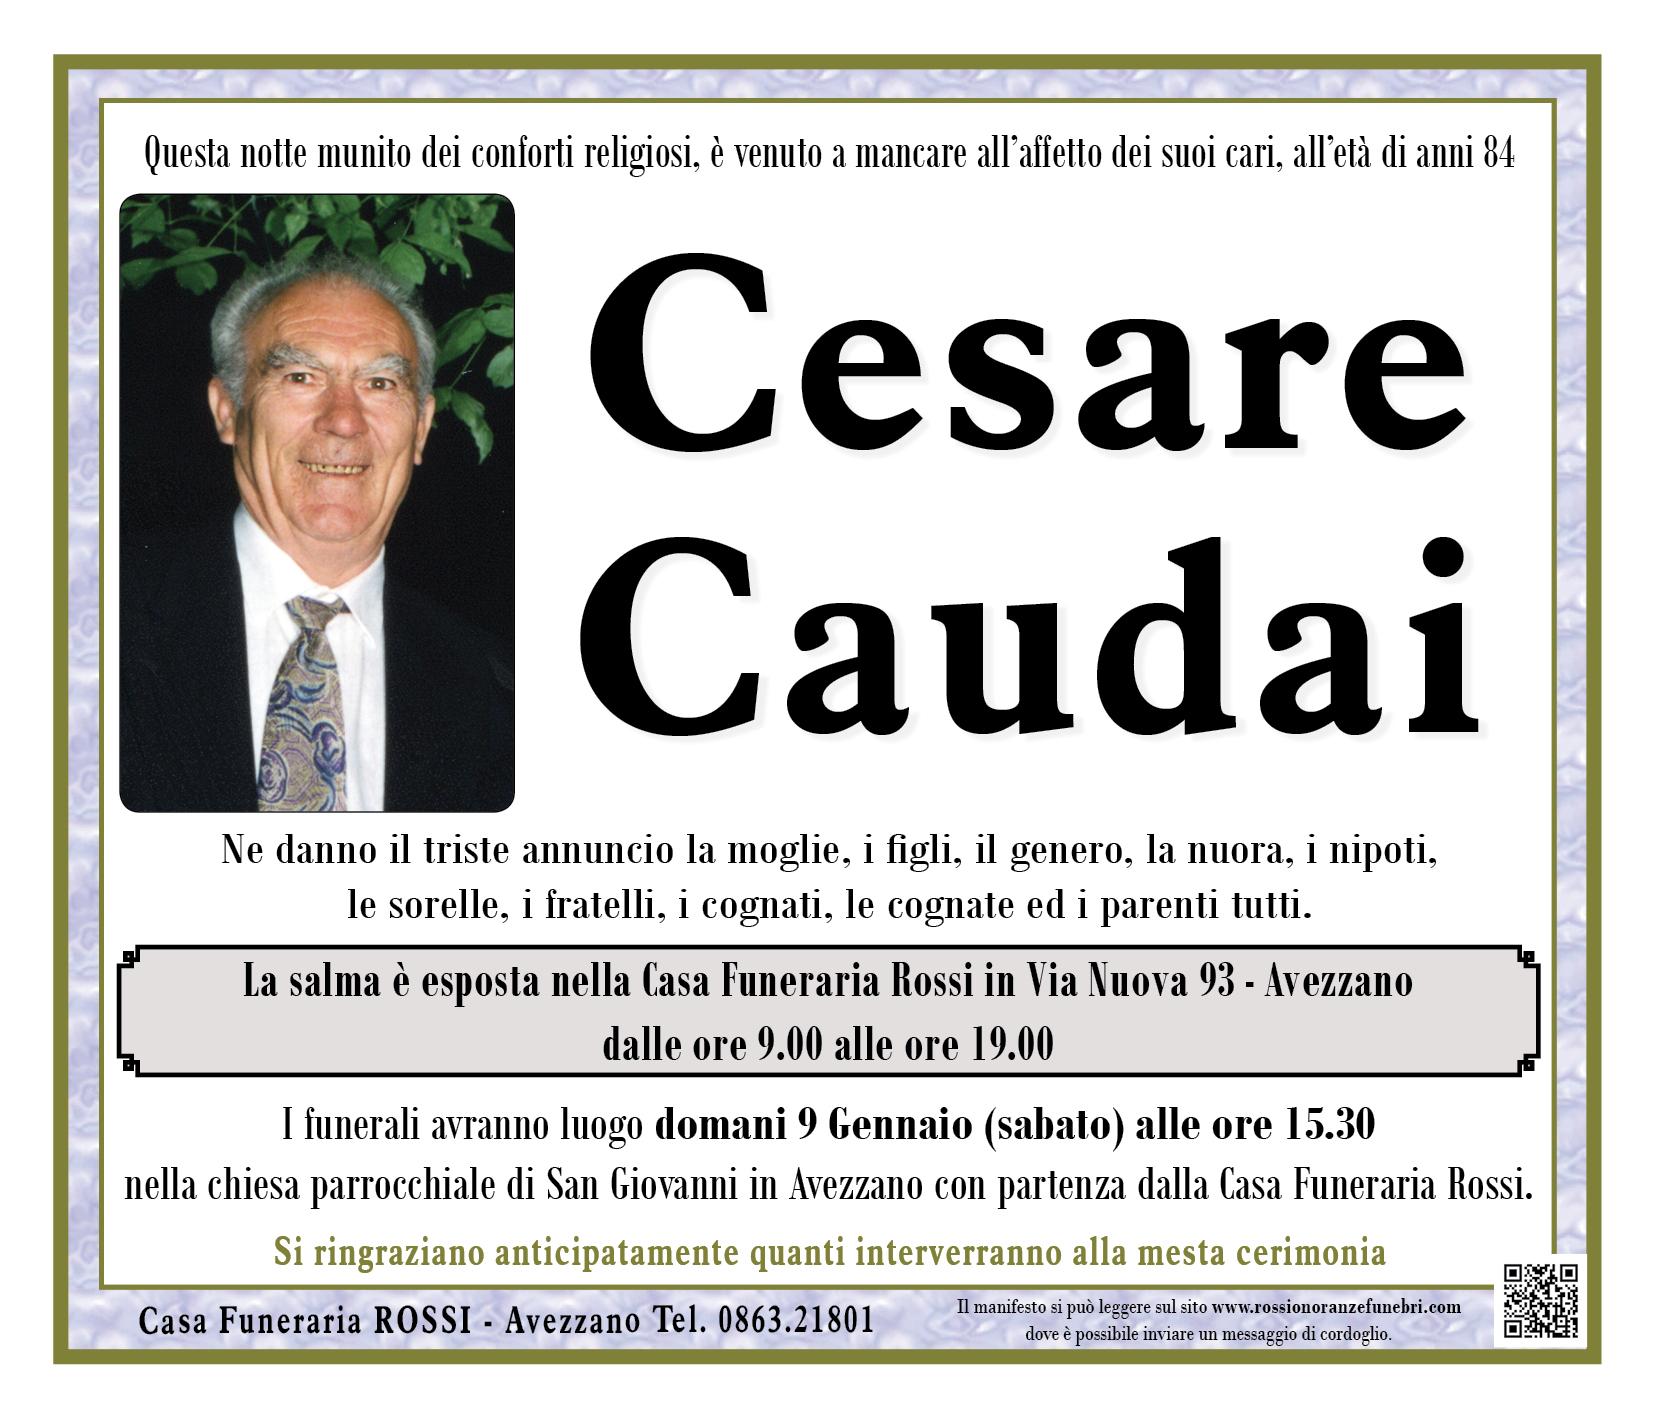 Cesare Caudai